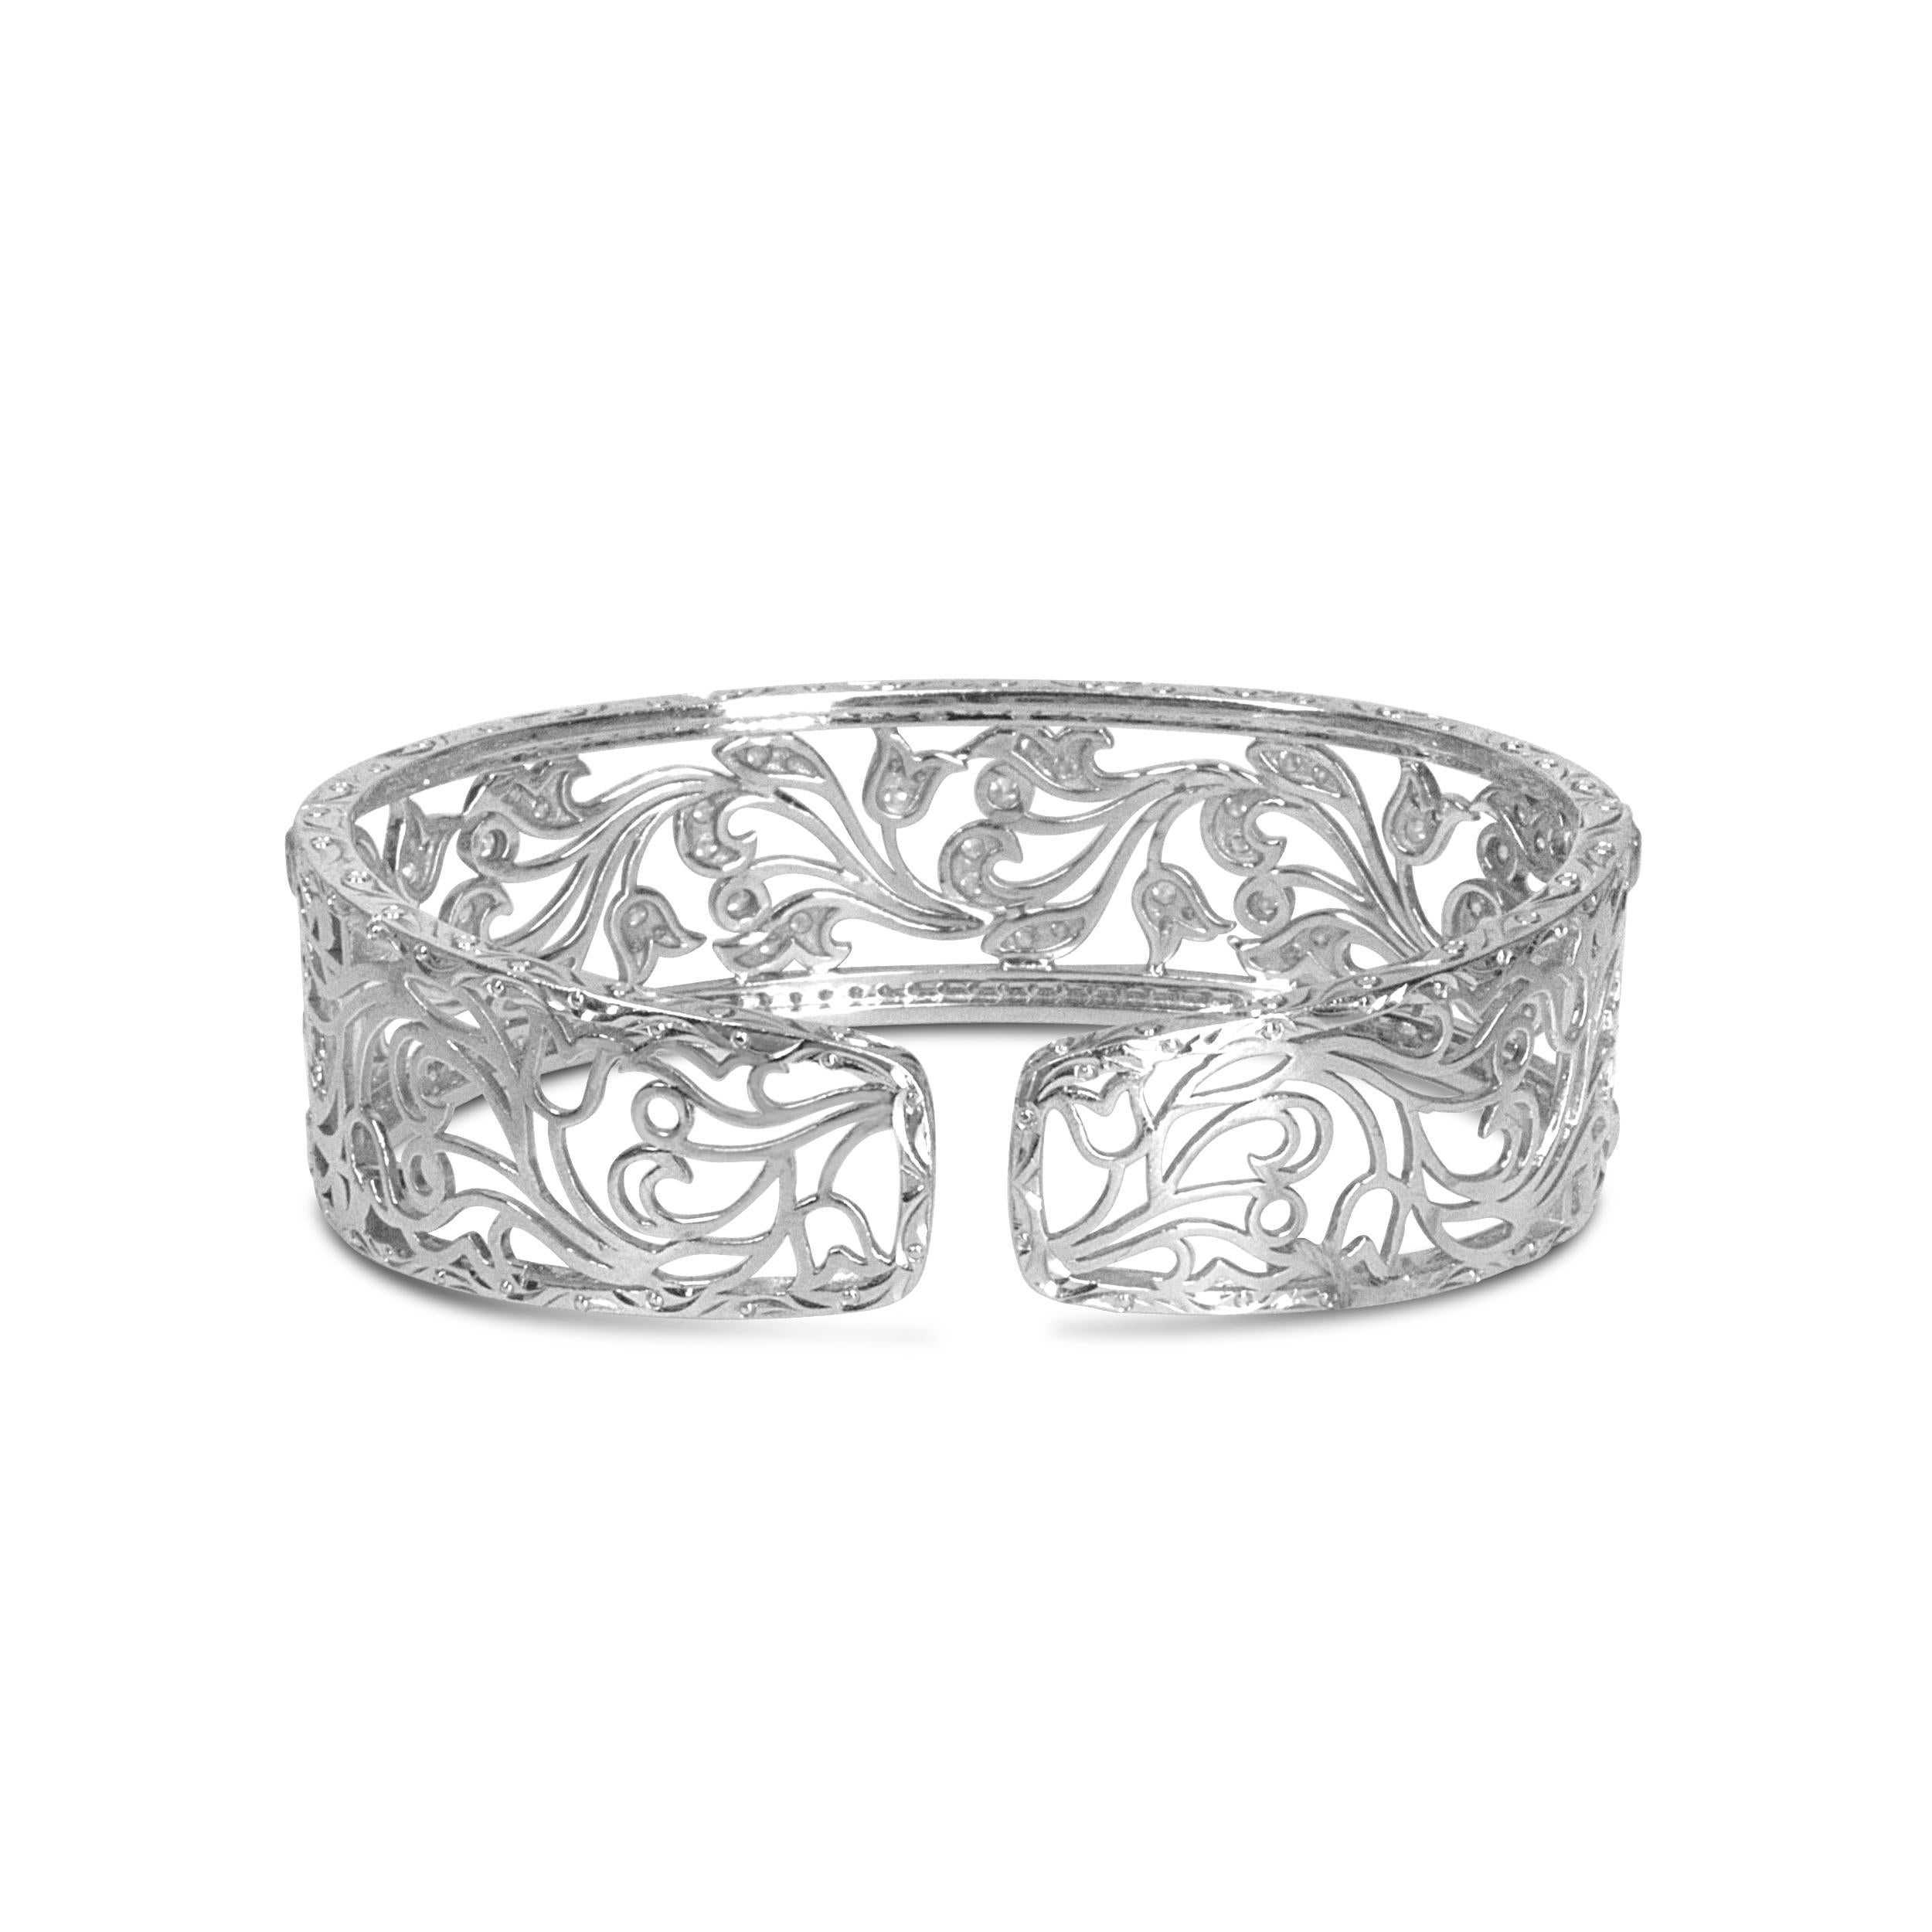 Ce resplendissant bracelet ajouré est un véritable chef-d'œuvre avec ses 164 diamants blancs ronds sertis dans un pavage qui rehausse l'élégance. Un magnifique motif floral ajouré en forme de tourbillon filigrane rend ce bijou époustouflant, et il